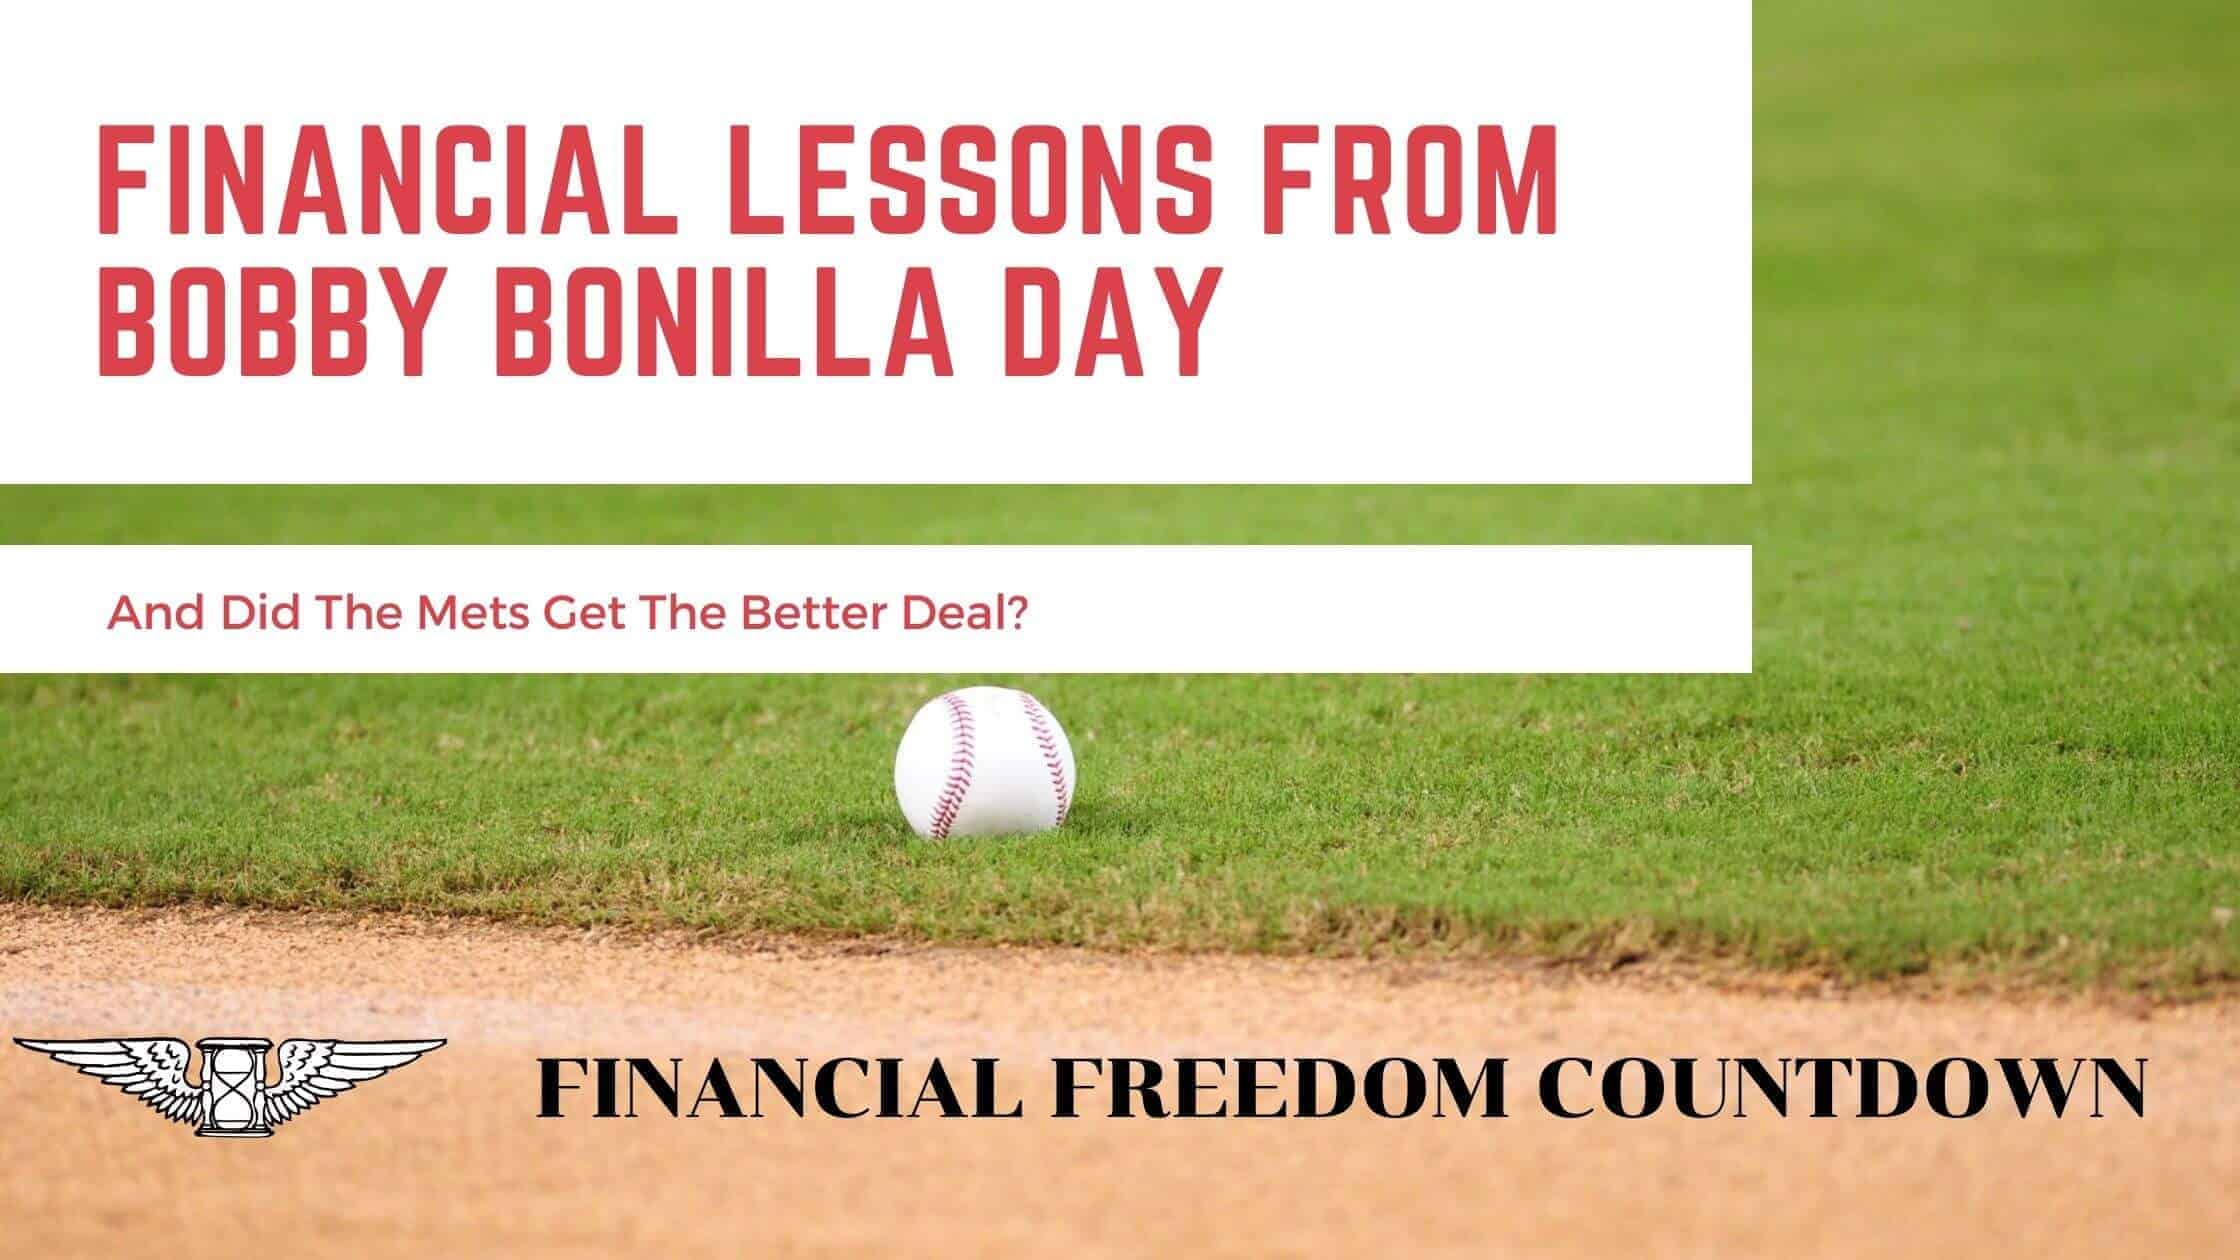 Bobby Bonilla Day marking the Bobby Bonilla Contract.